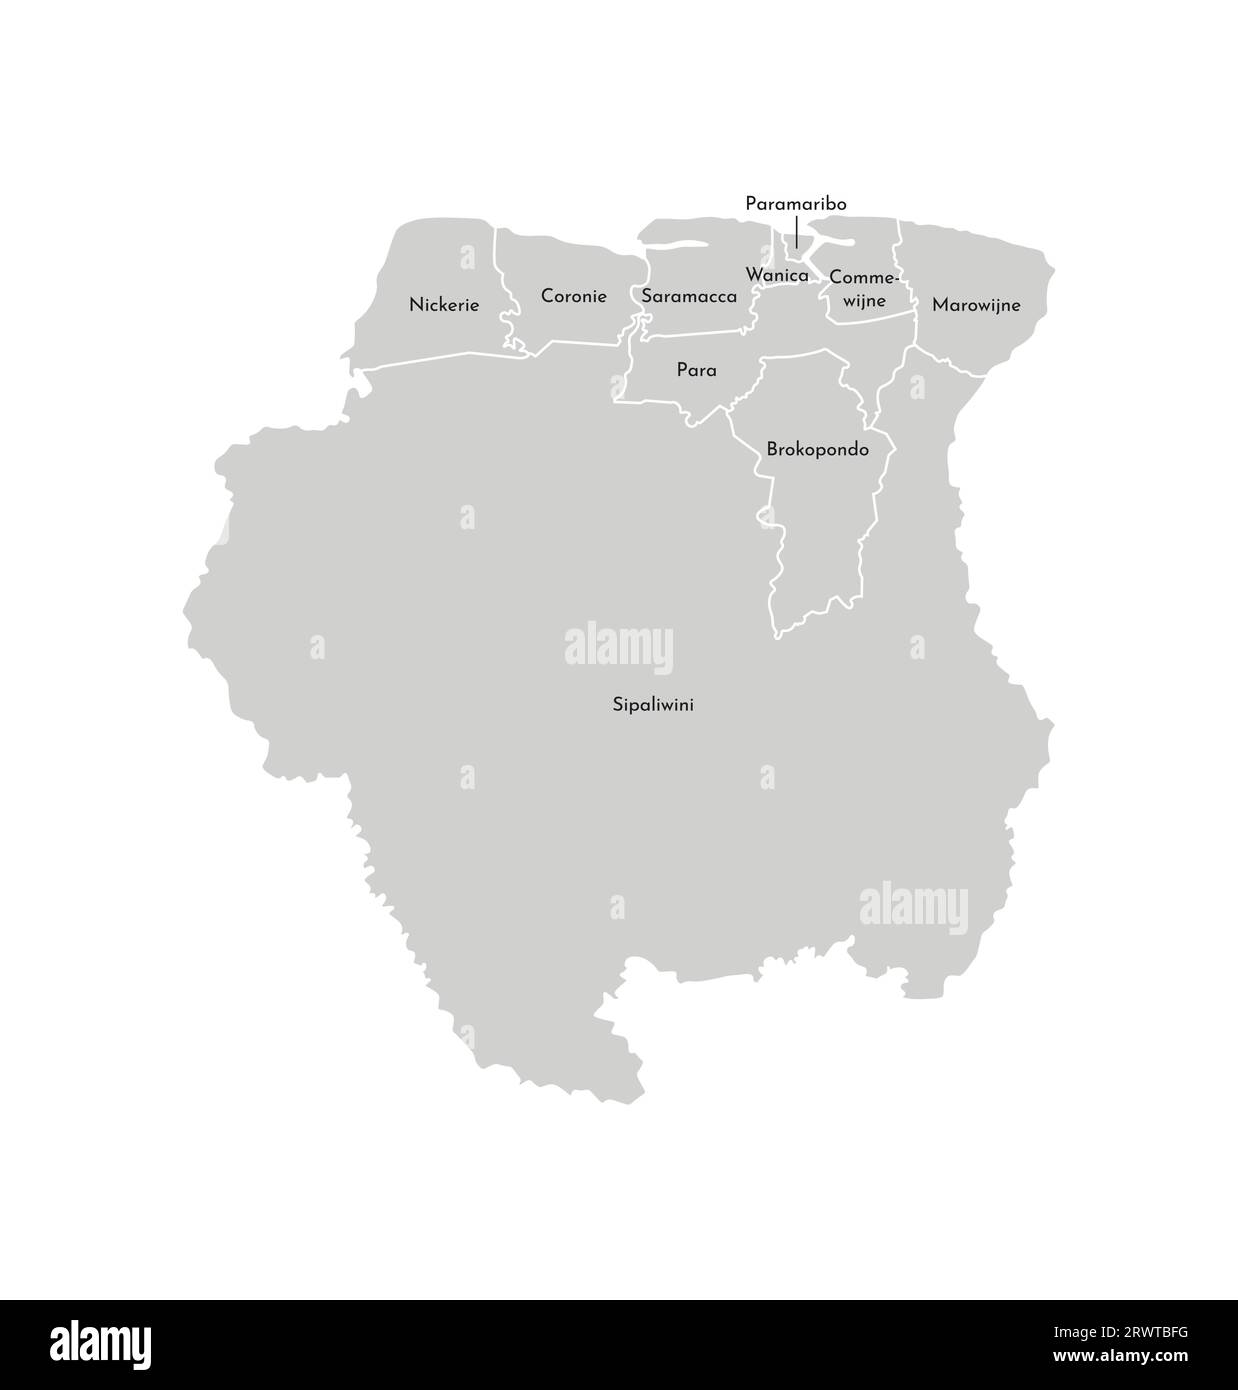 Vektorisolierte Darstellung einer vereinfachten Verwaltungskarte von Suriname. Grenzen und Namen der Bezirke (Regionen). Graue Silhouetten. Weiße Omelettes Stock Vektor